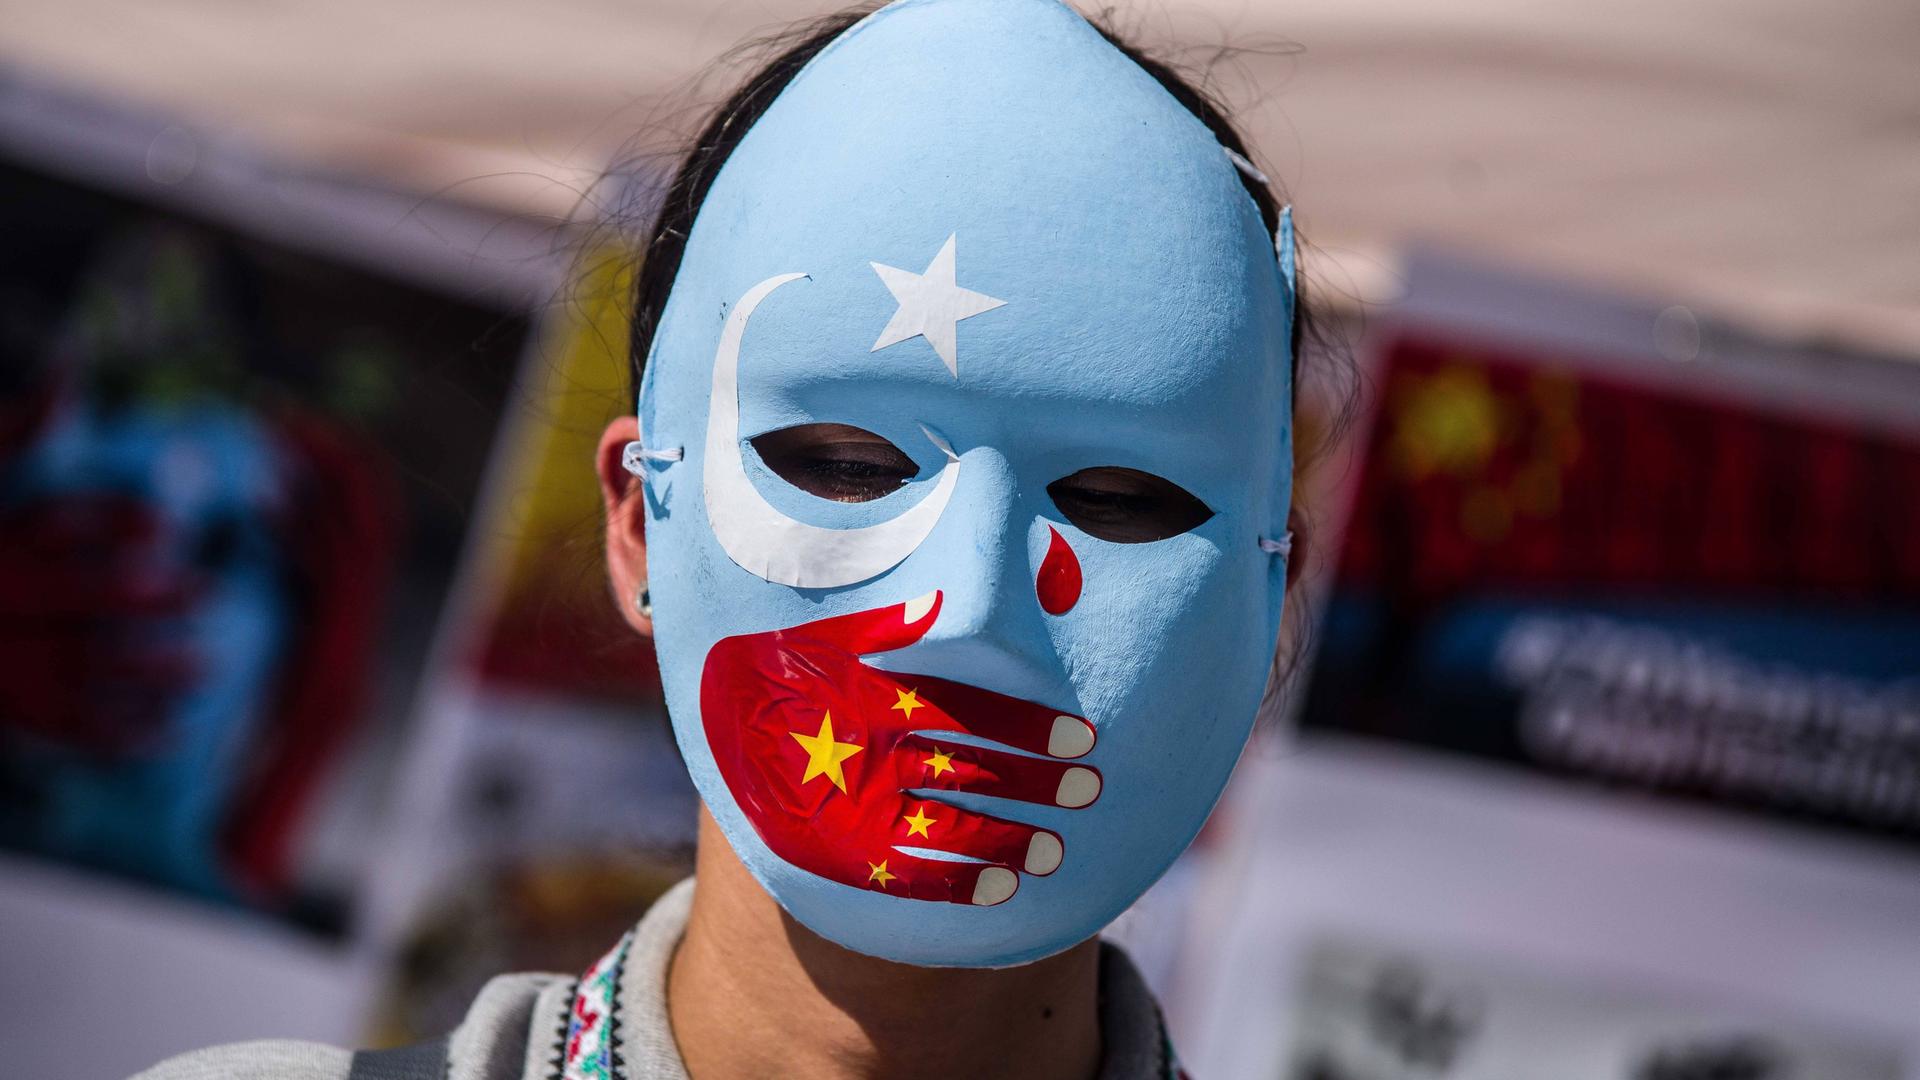 Eine Frau trägt eine blaue Maske mit weißem Stern und weißer Mondsichel. Über den Mund ist eine rote Hand gemalt, die eine chinesische Fahne symbolisiert. Im rechten Augenwinkel ist eine rote Träne. 